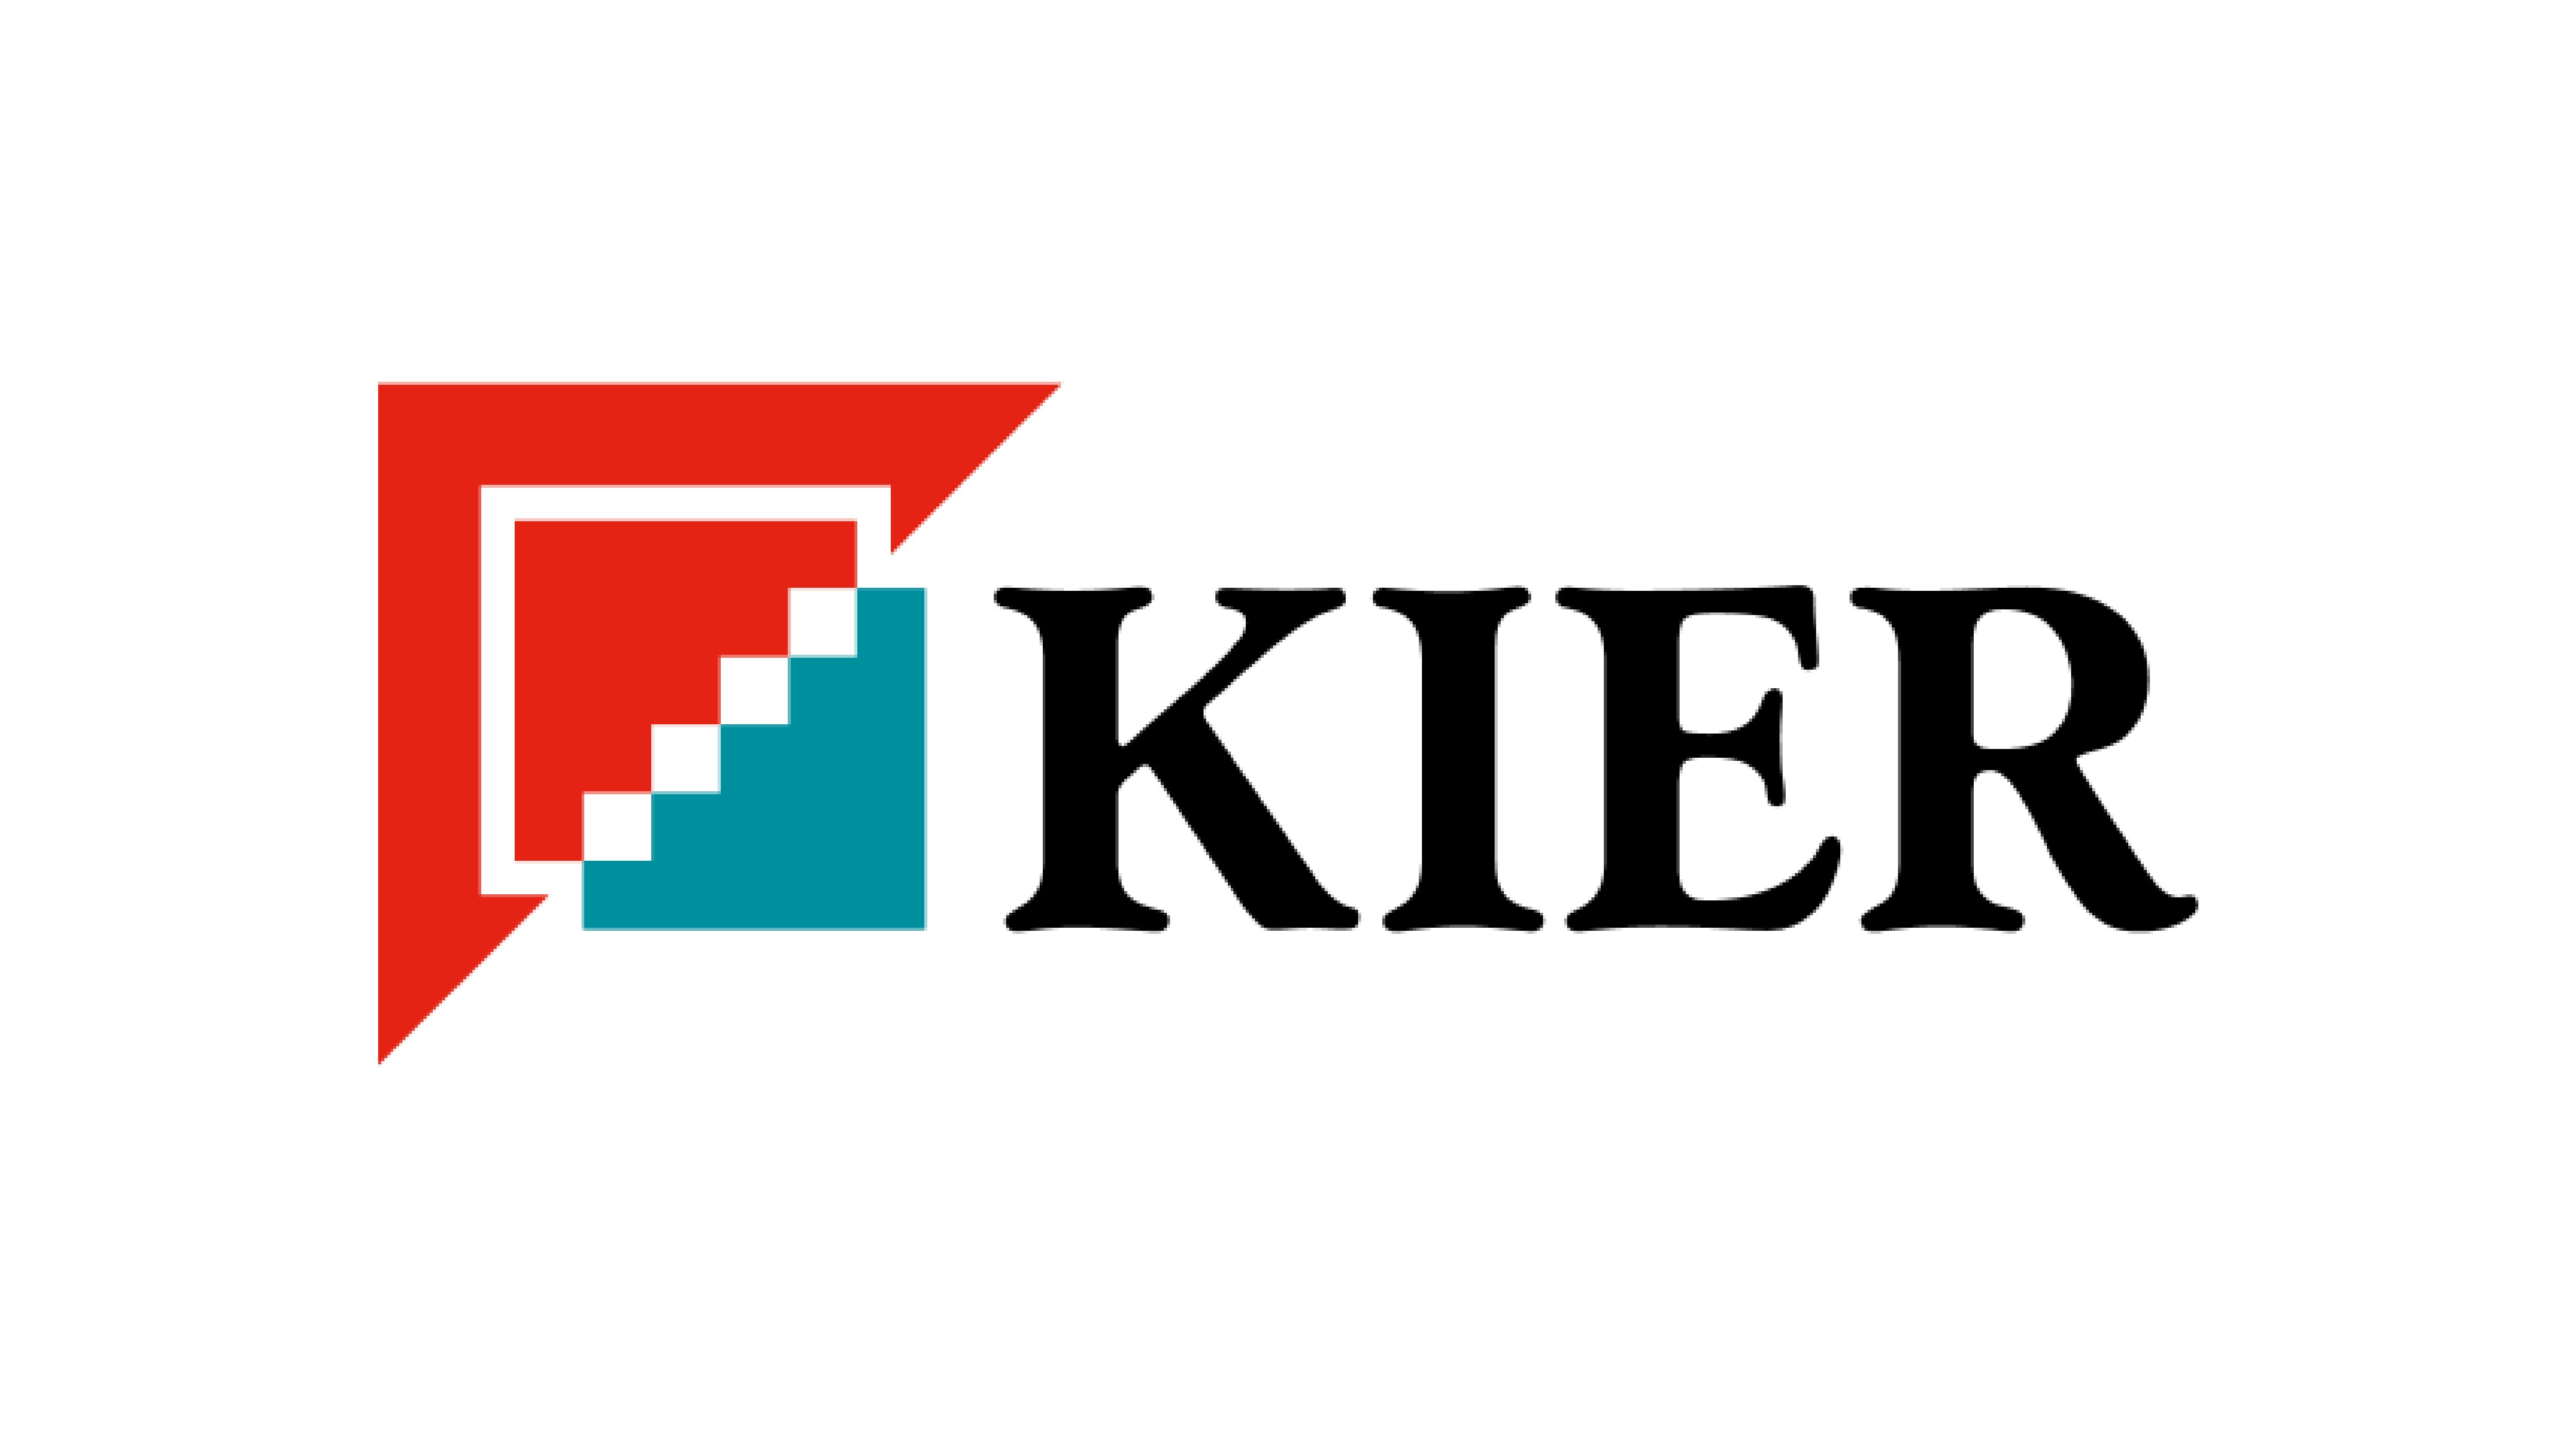 kier group logo on a white background.